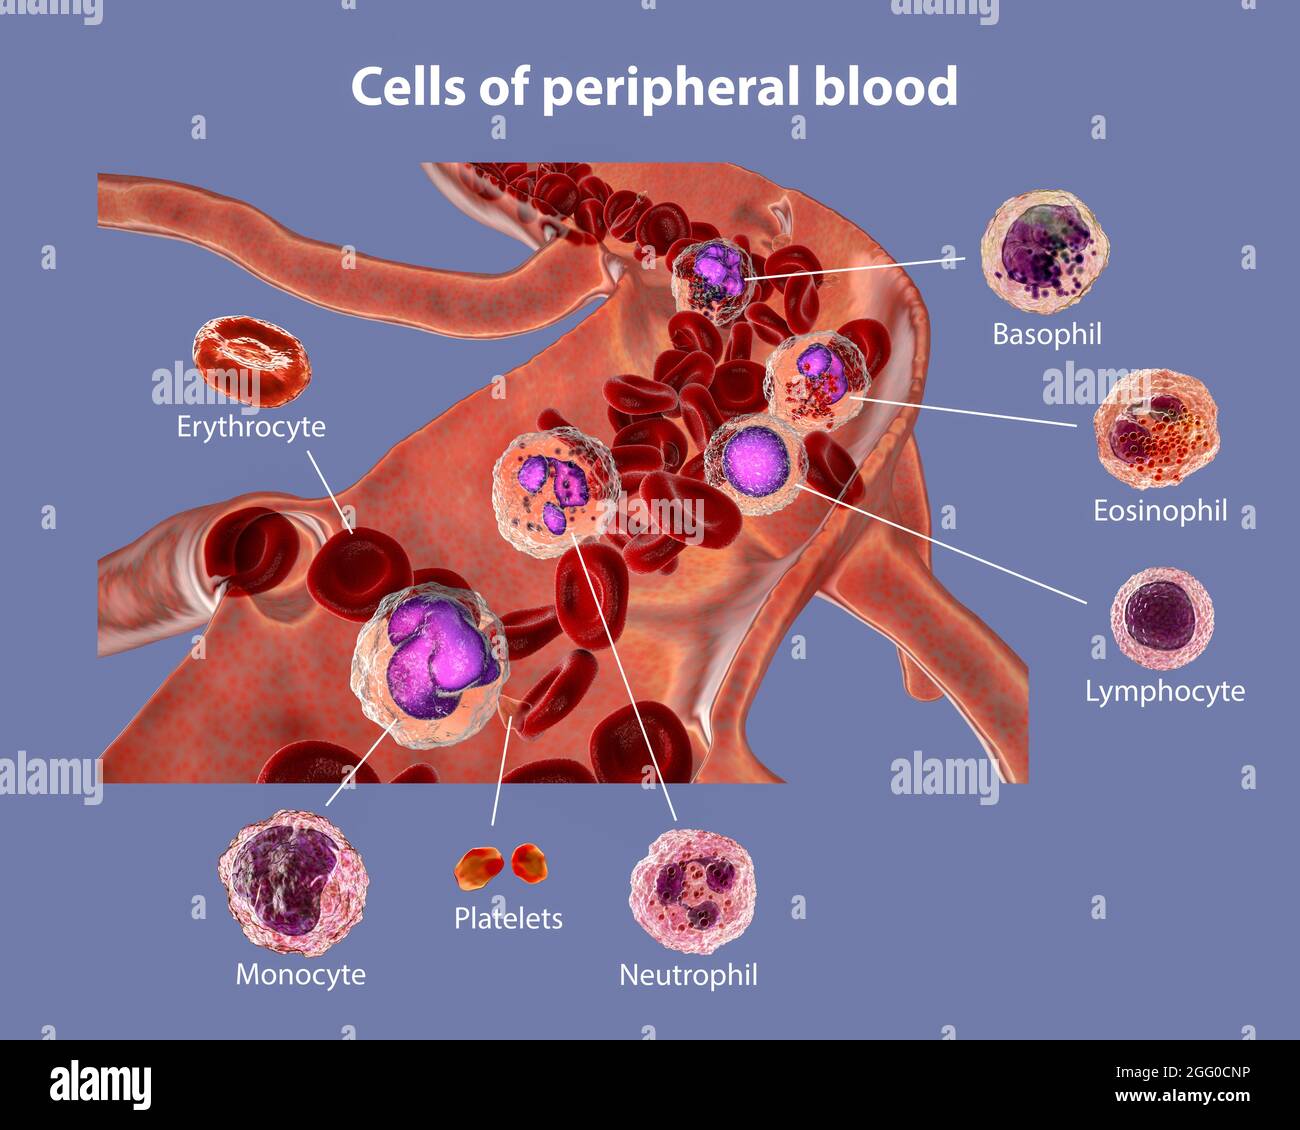 Illustration montrant différents types de cellules sanguines, érythrocytes, neutrophiles, monocytes, basophiles, éosinophiles, lymphocytes et plaquettes. Image étiquetée. Banque D'Images